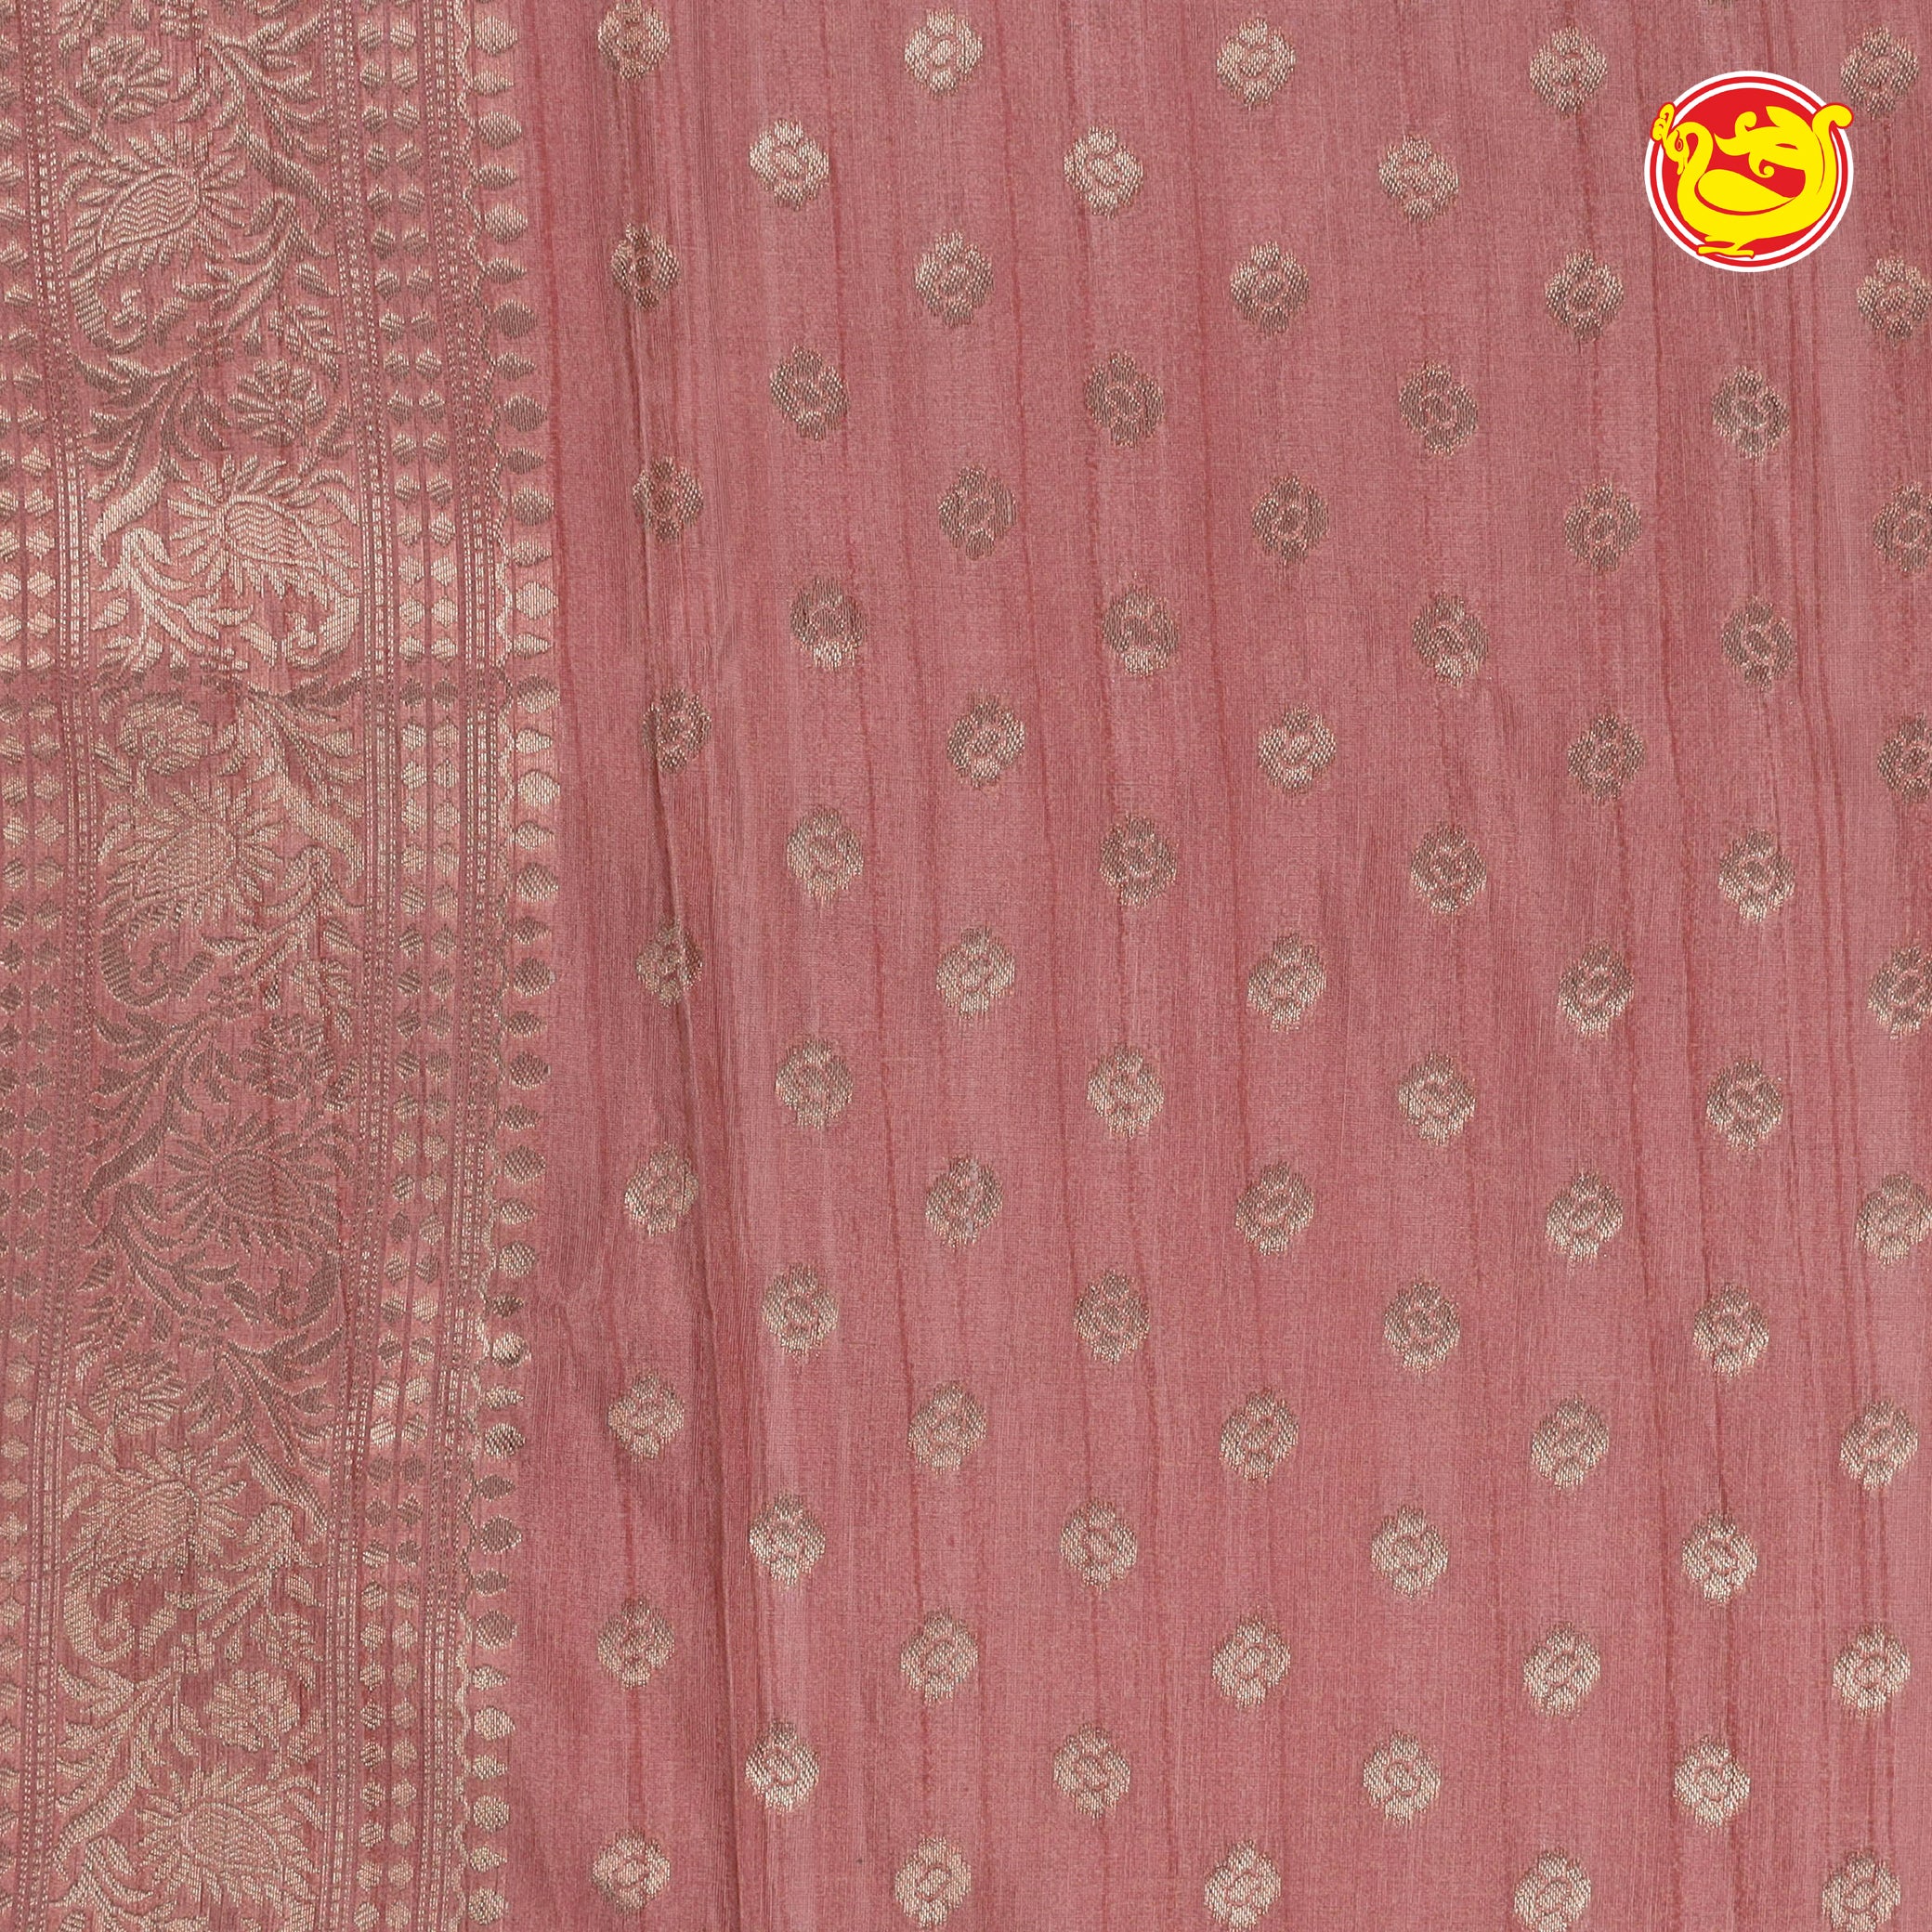 Light pink art tussar silk saree